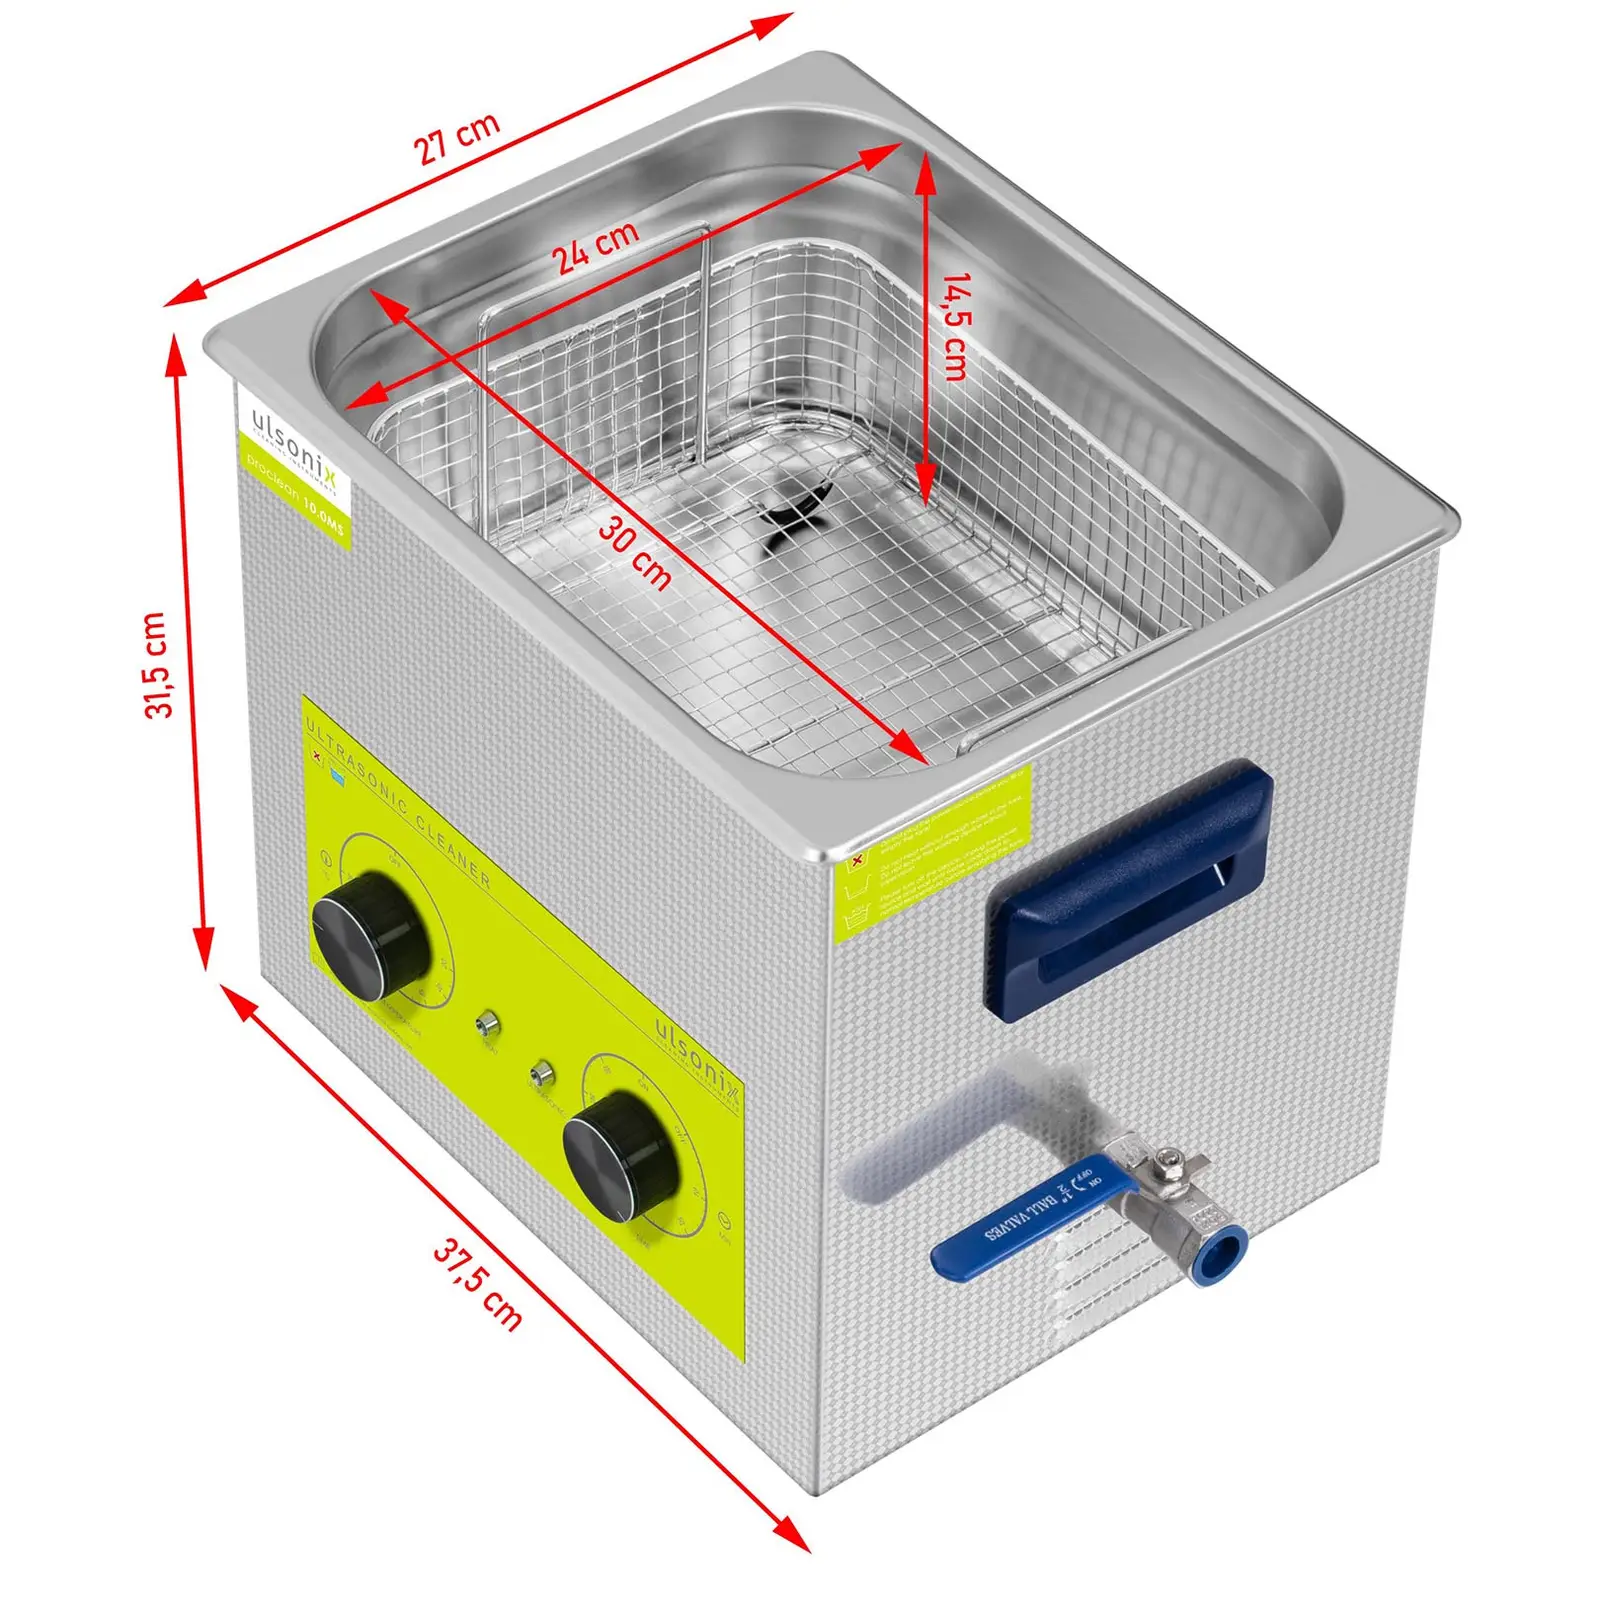 Lavatrice a ultrasuoni - 10 litri - 240 W